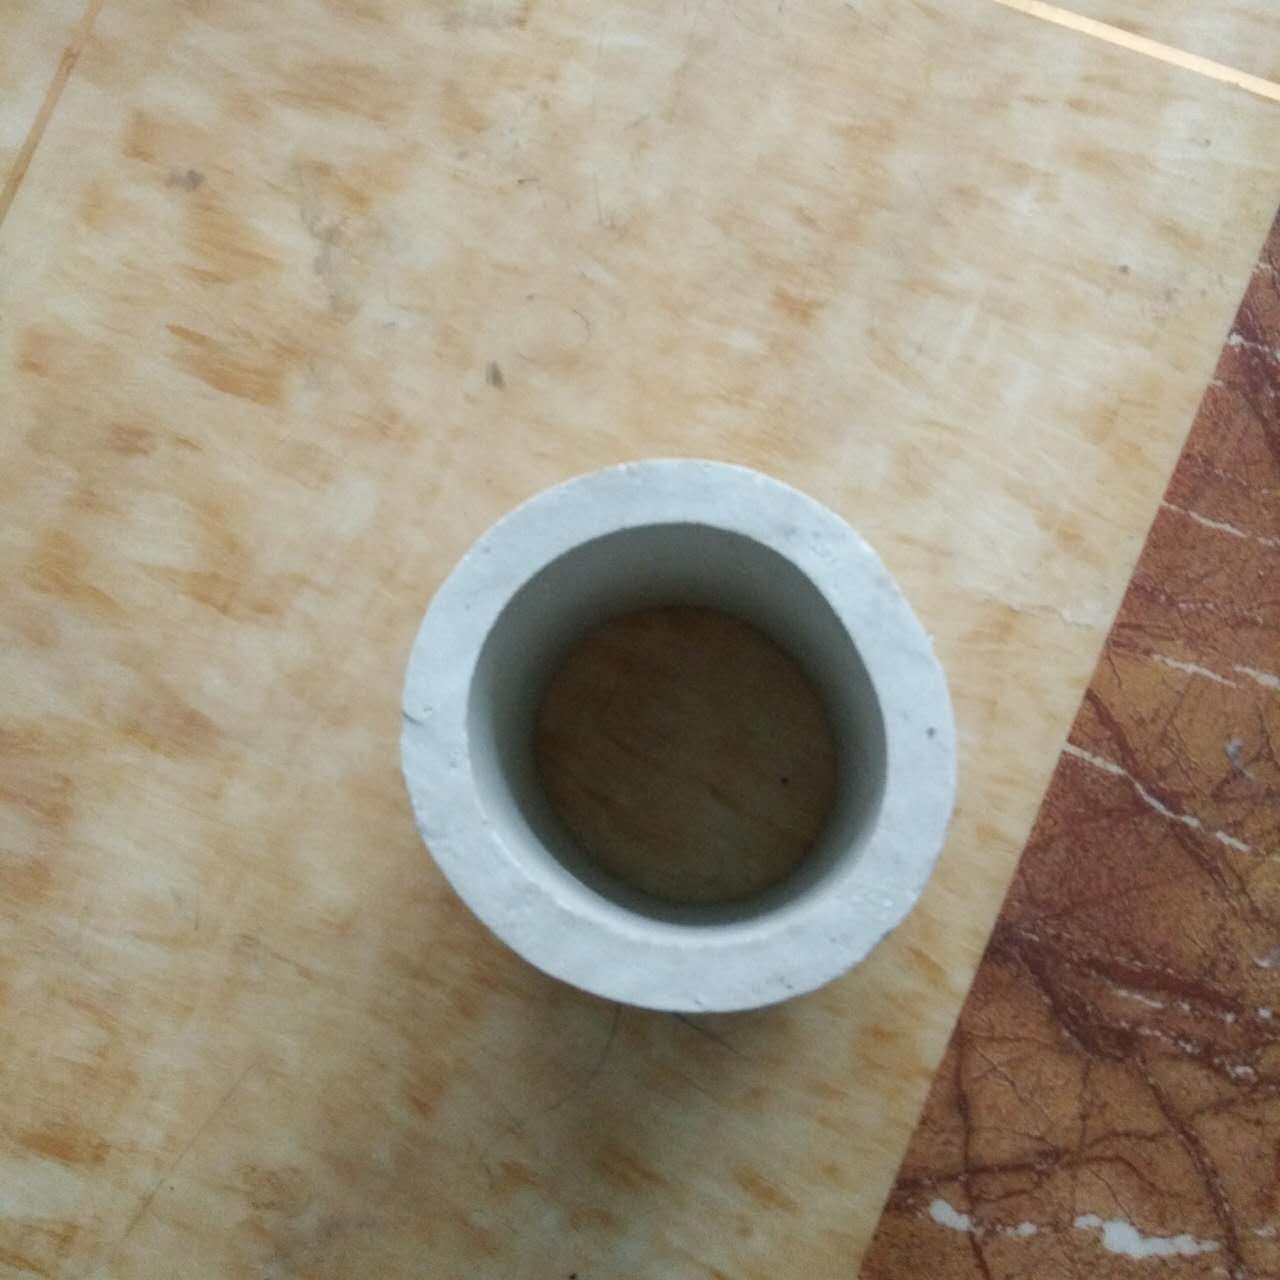 深圳瑞光厂家批发各种环保填料陶瓷填料PP填料图片